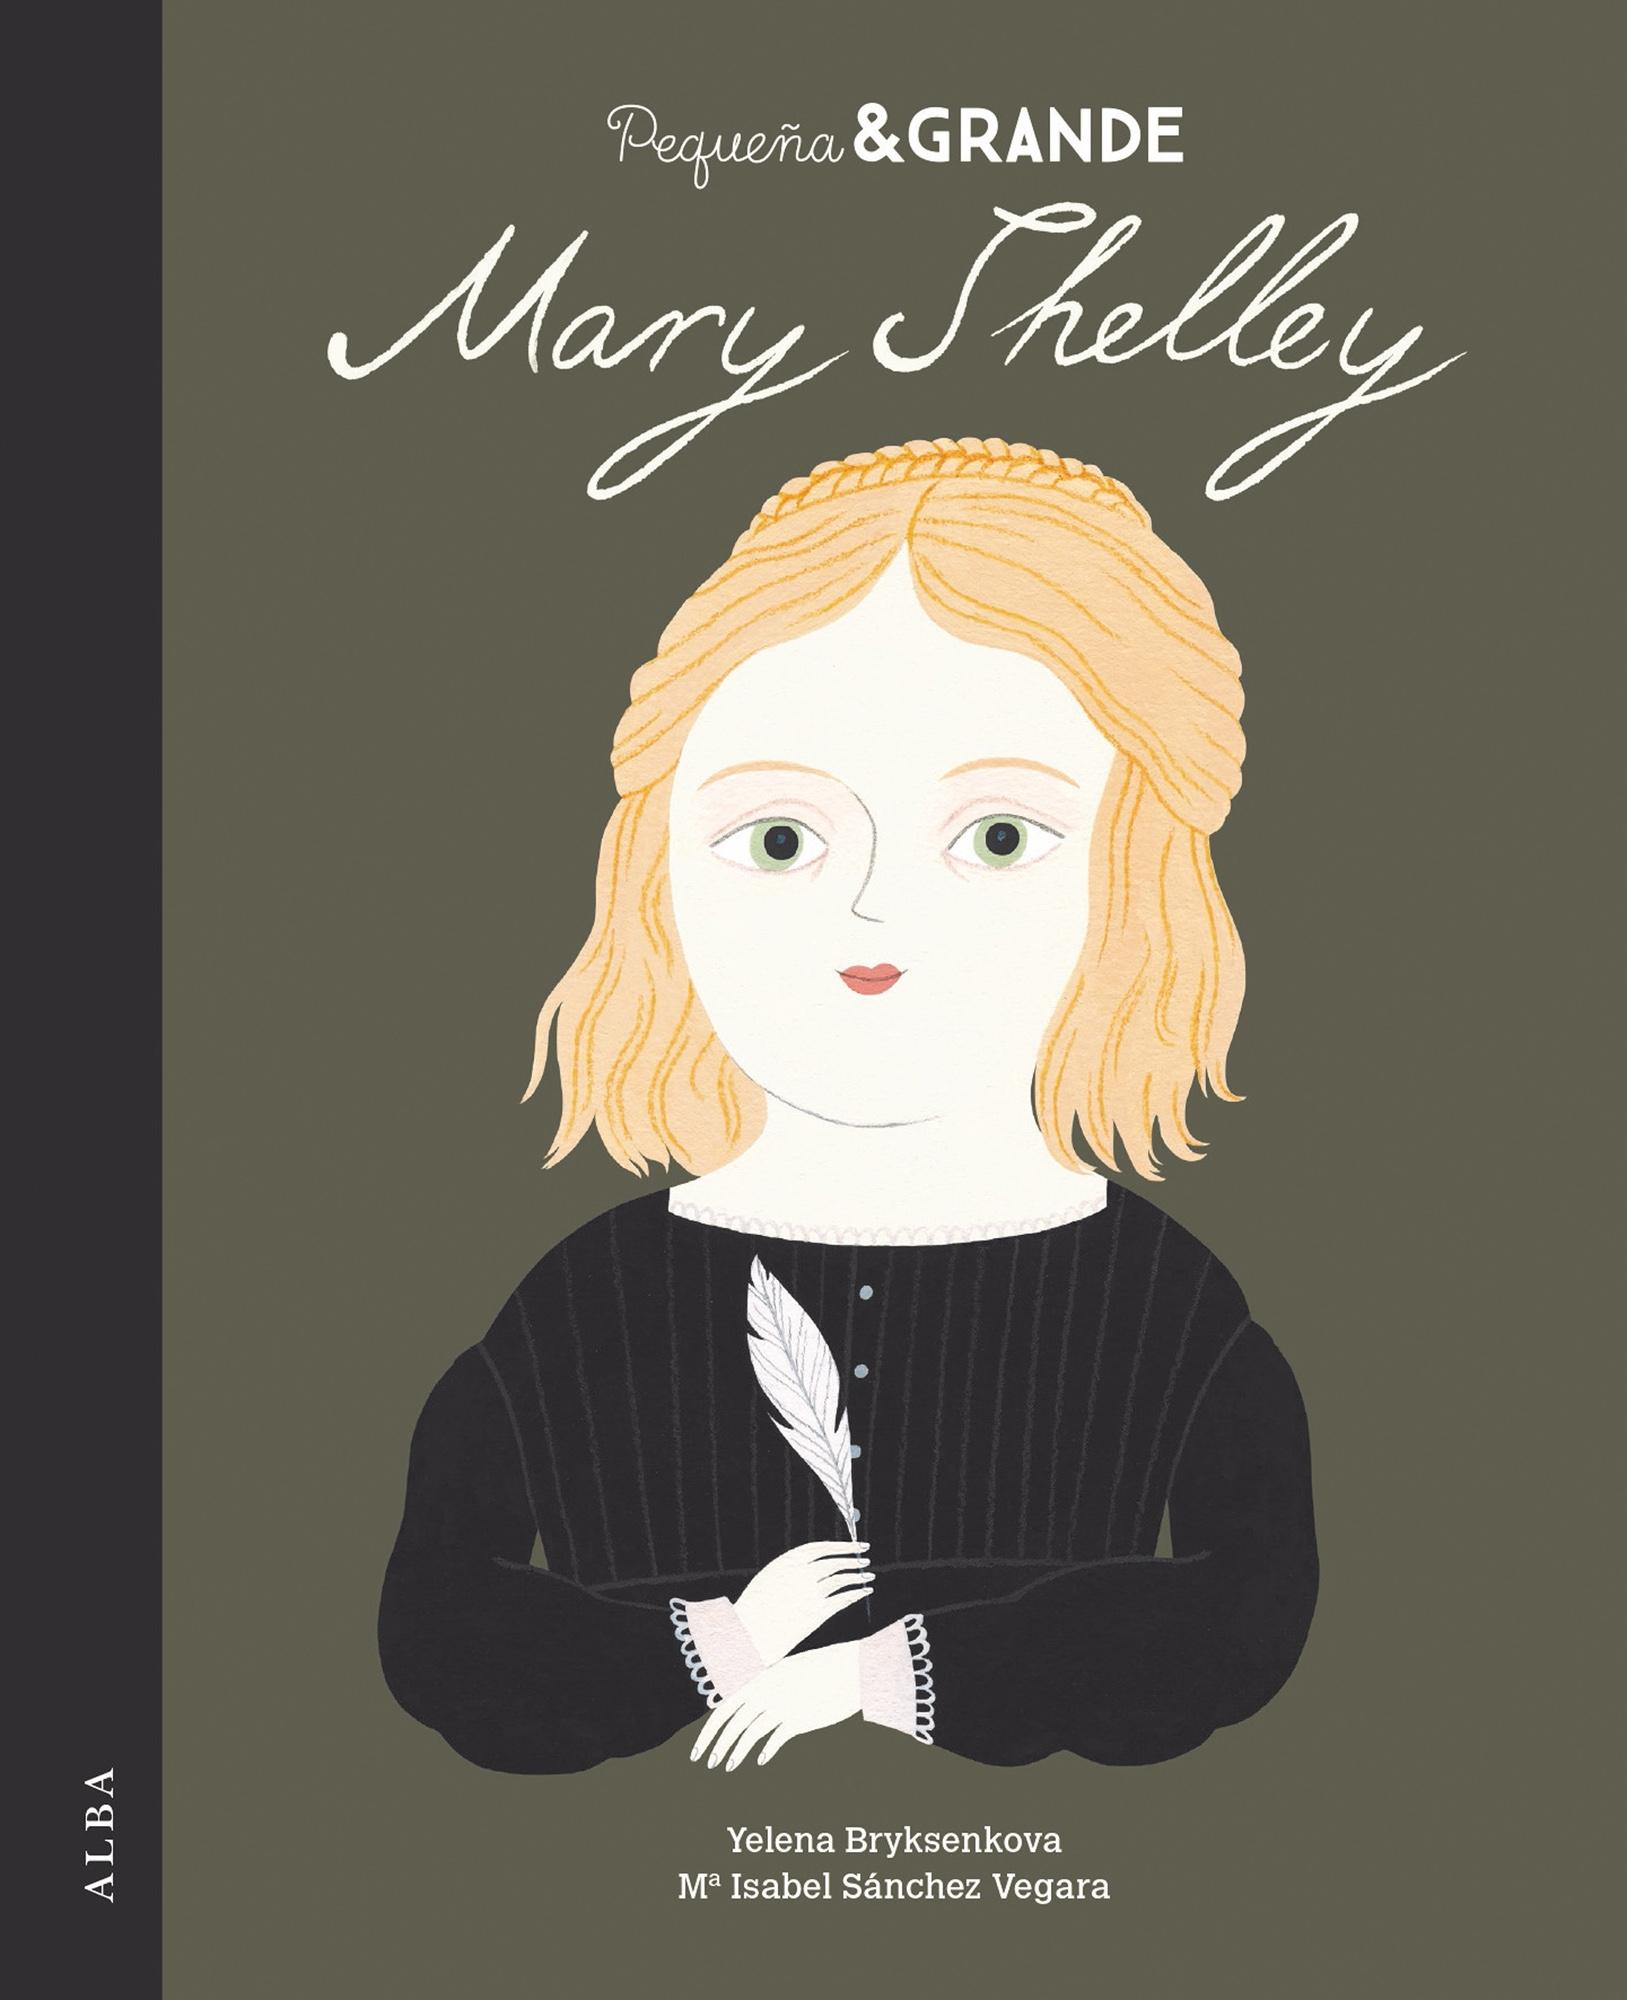 Pequeña & Grande Mary Shelley. 